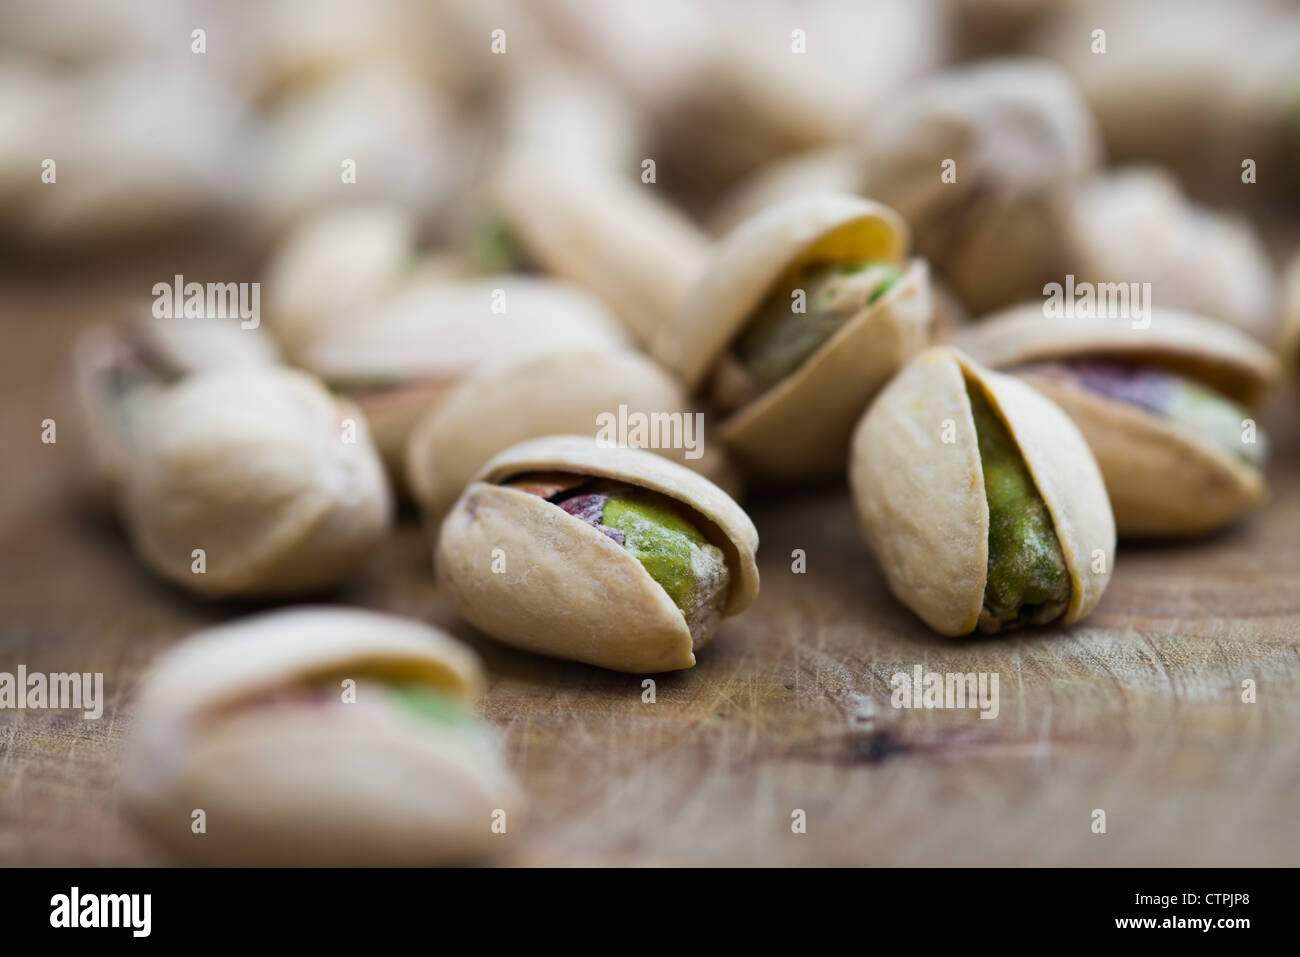 Il s'agit d'une image pf les pistaches dans le shell. Banque D'Images